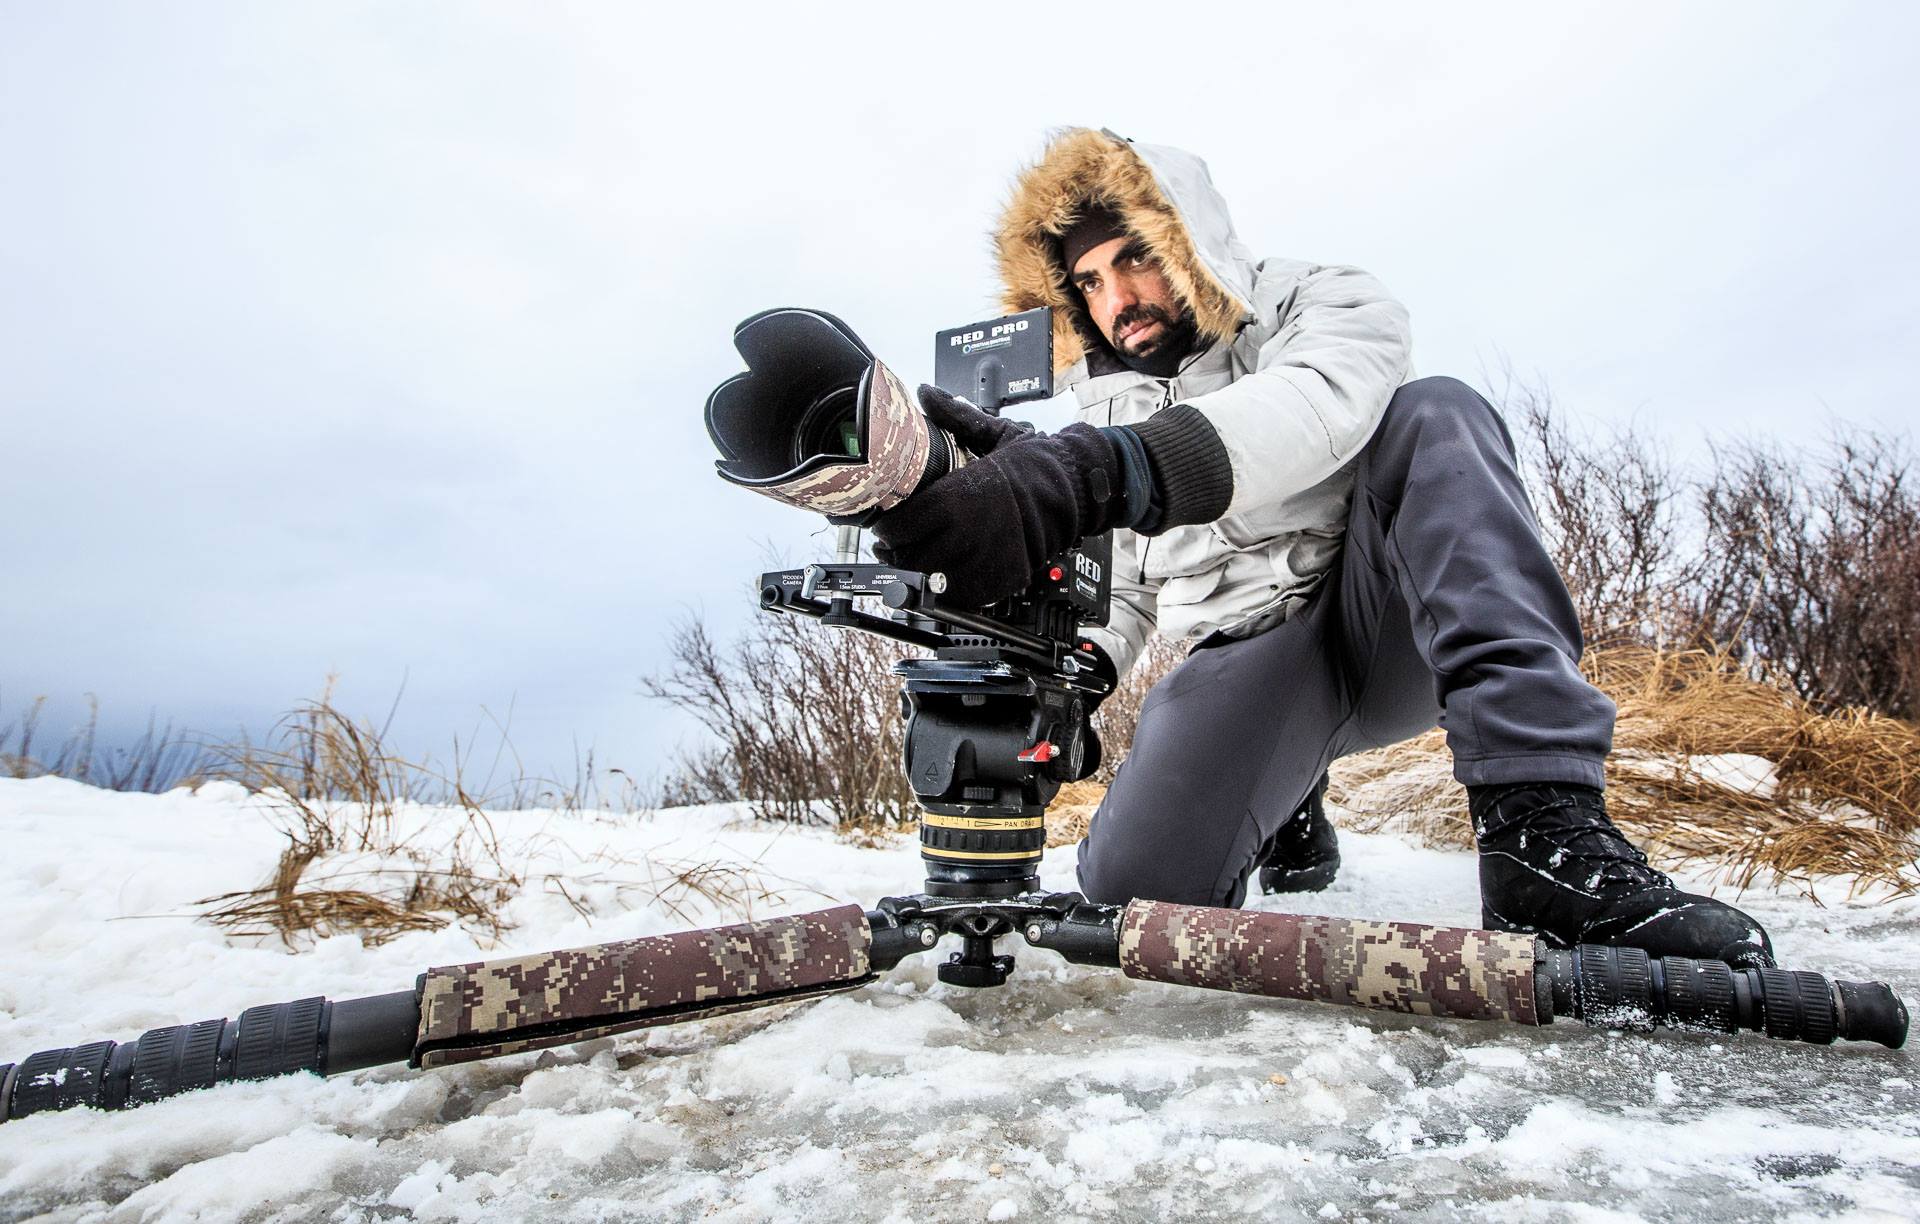 Filming Polar bears in 6k